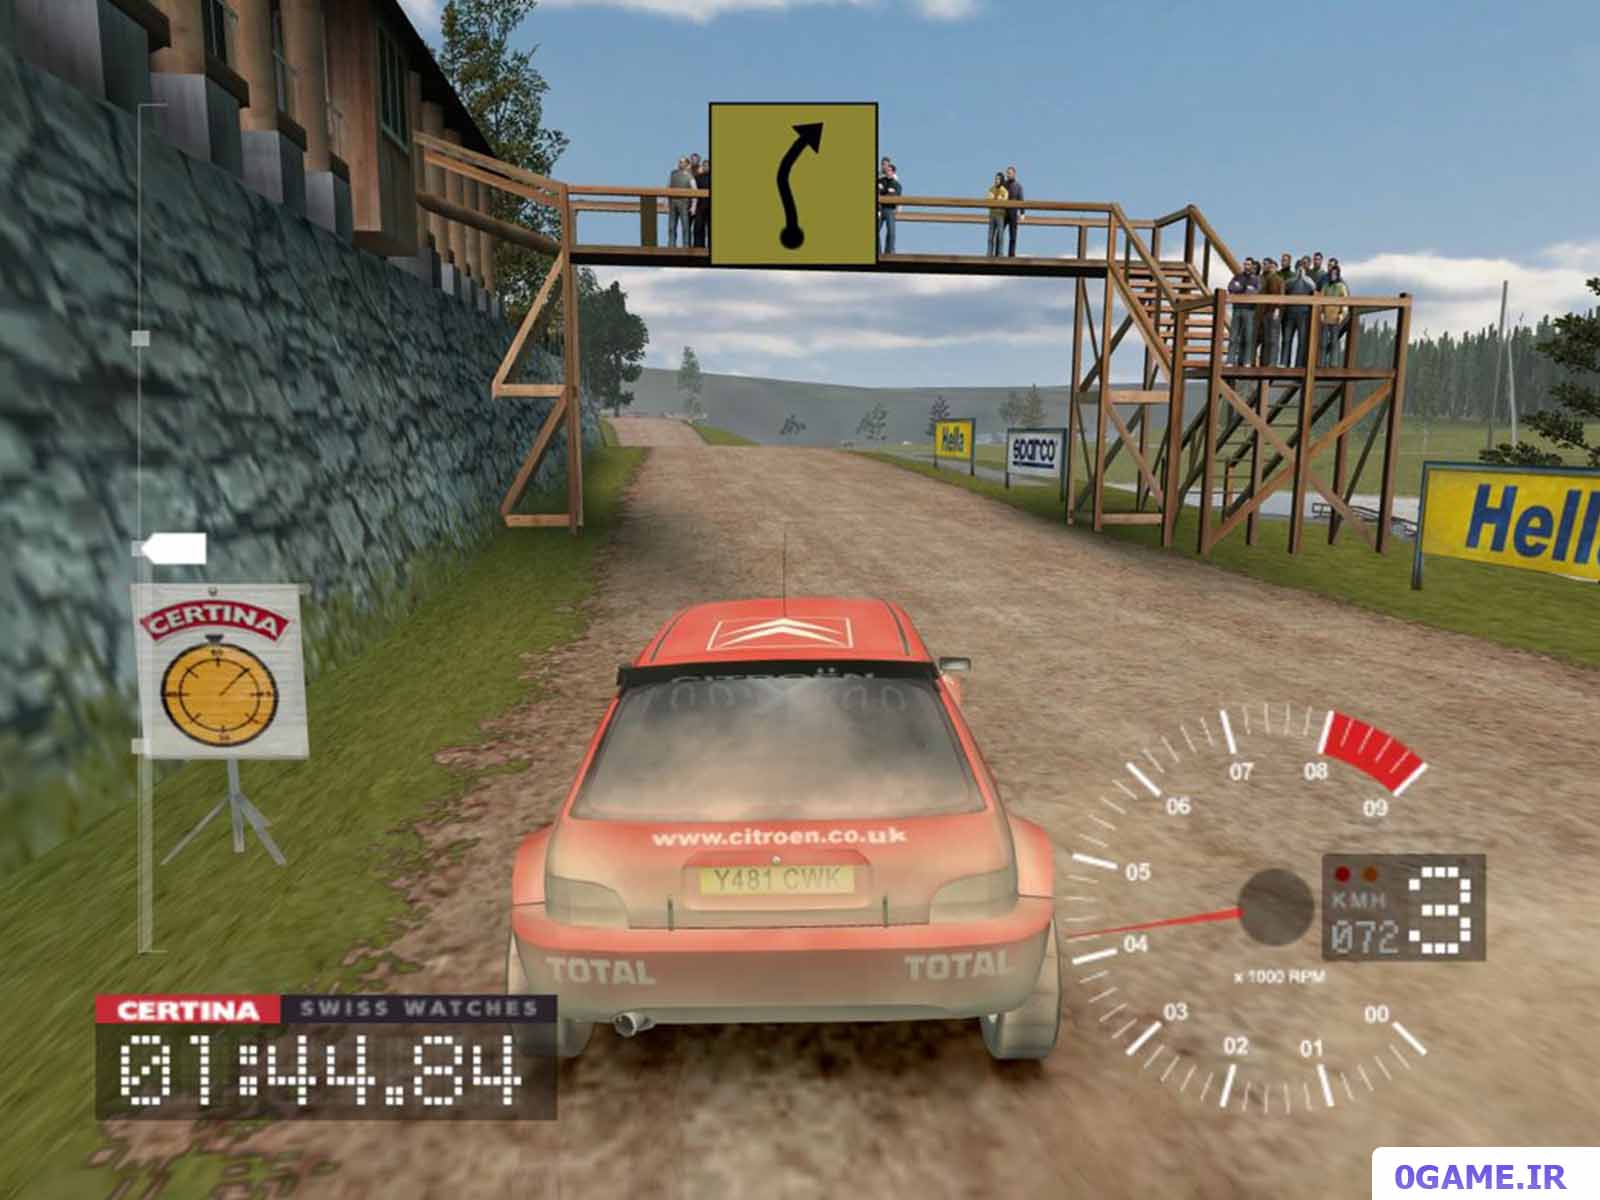 دانلود بازی کالین مک‌ری رالی (Colin McRae Rally 3) نسخه کامل برای کامپیوتر